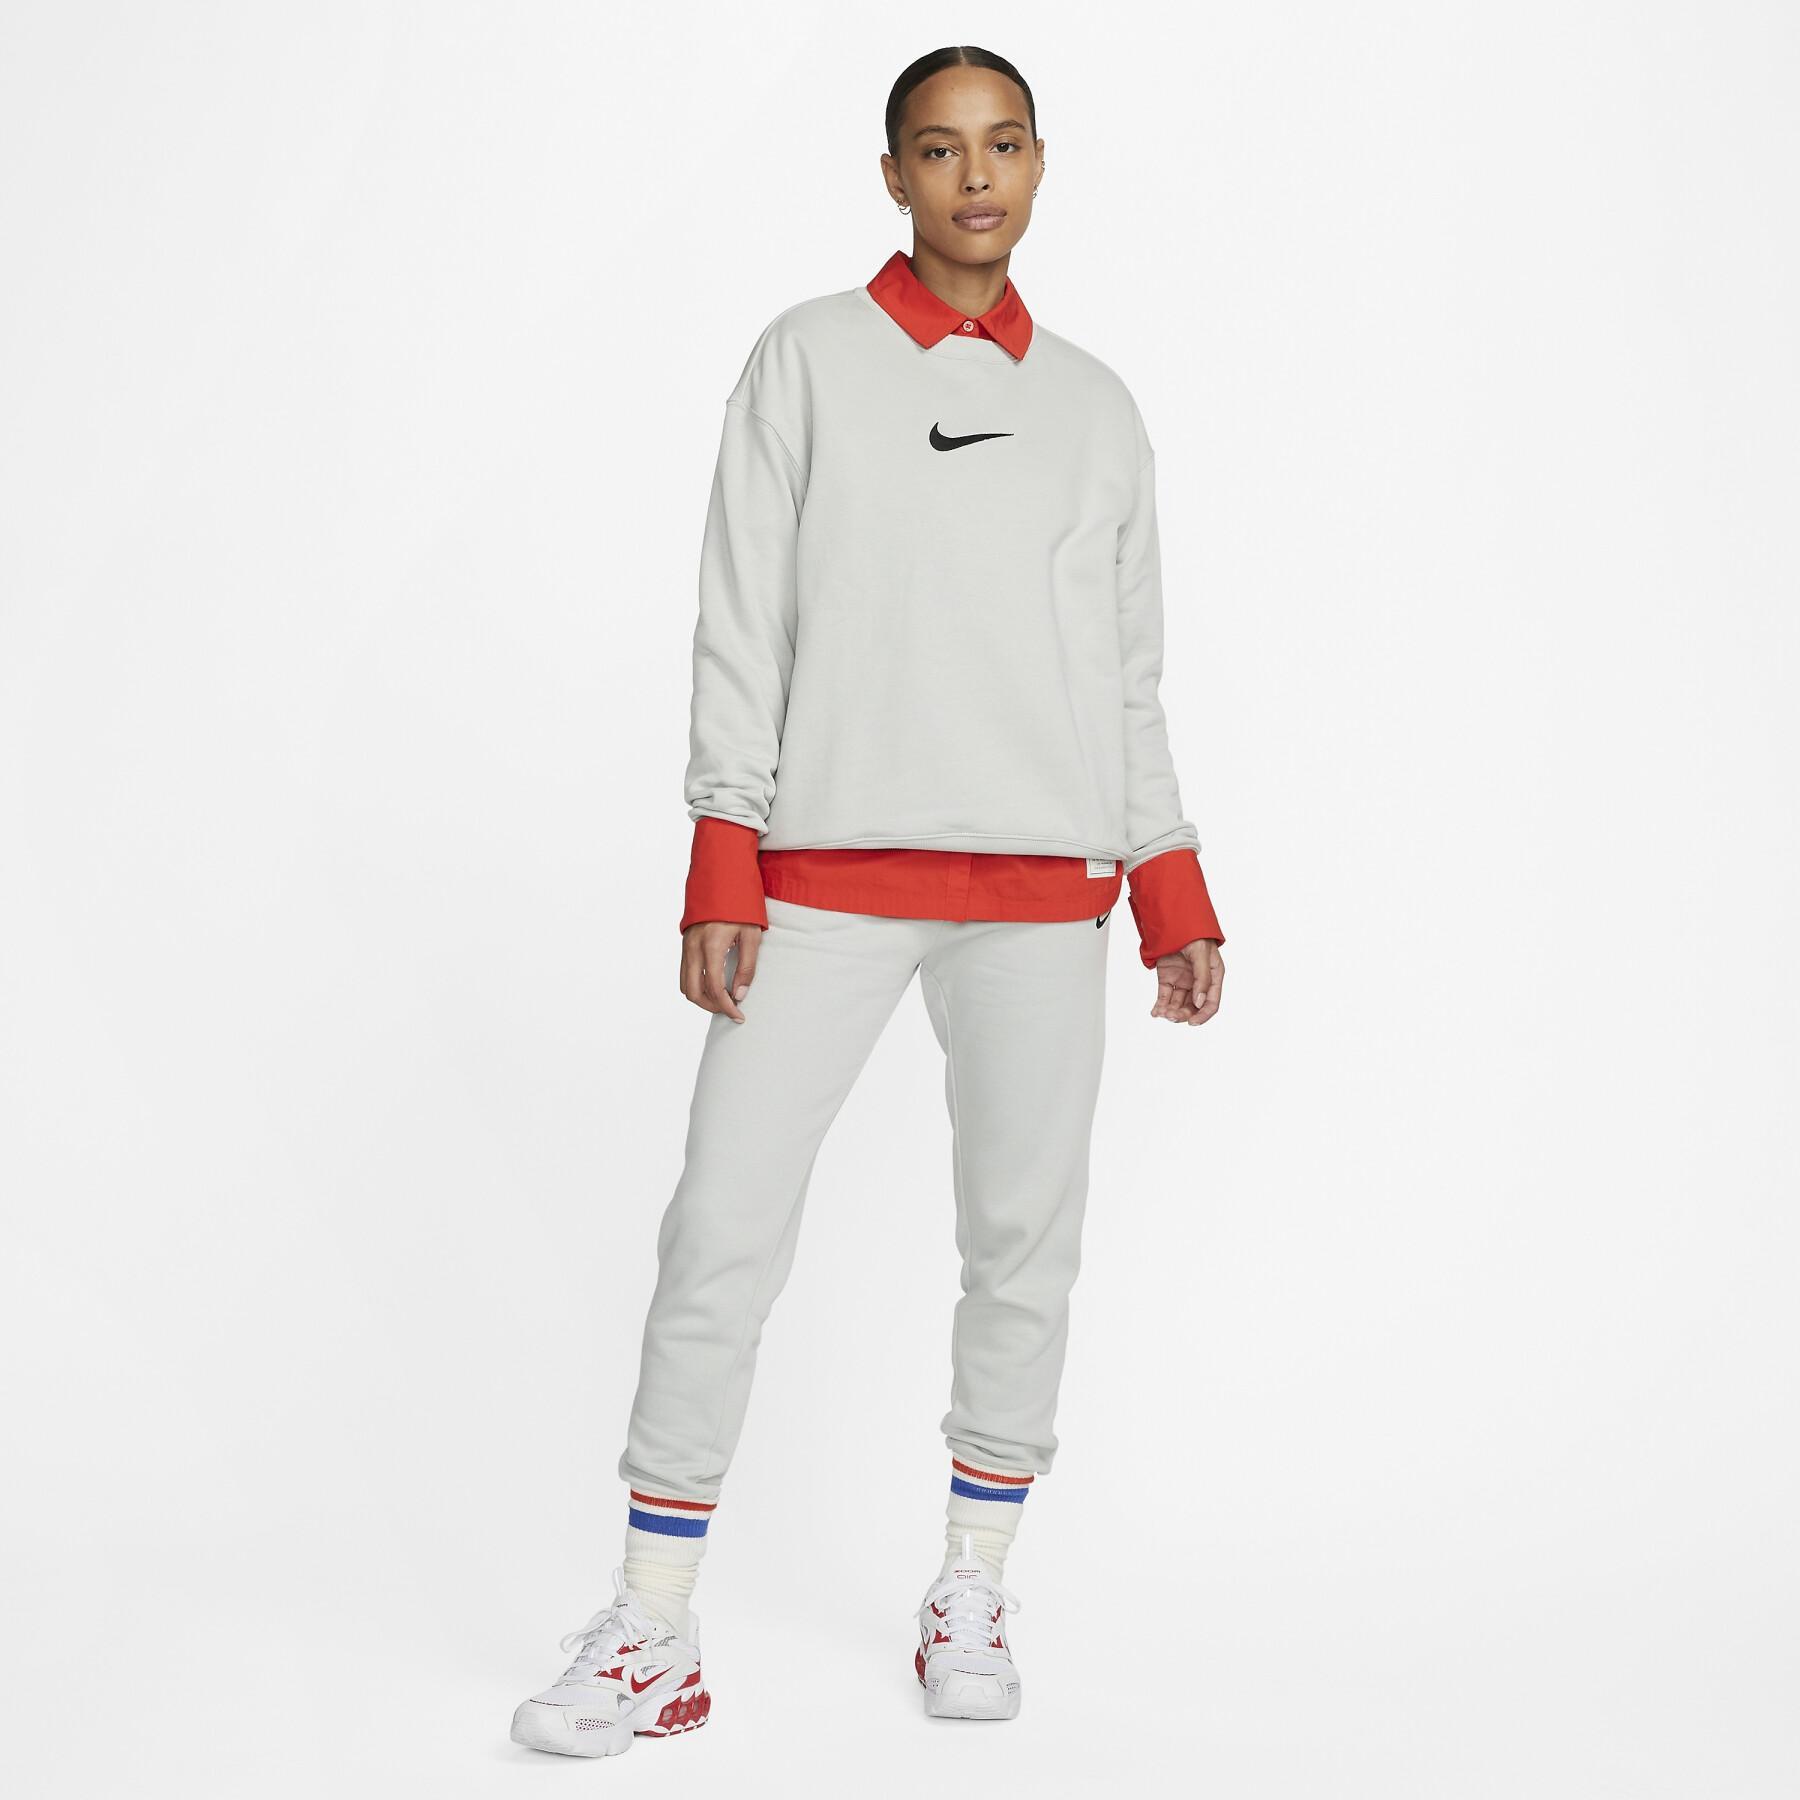 Sweatshirt woman Nike Fleece OS MS